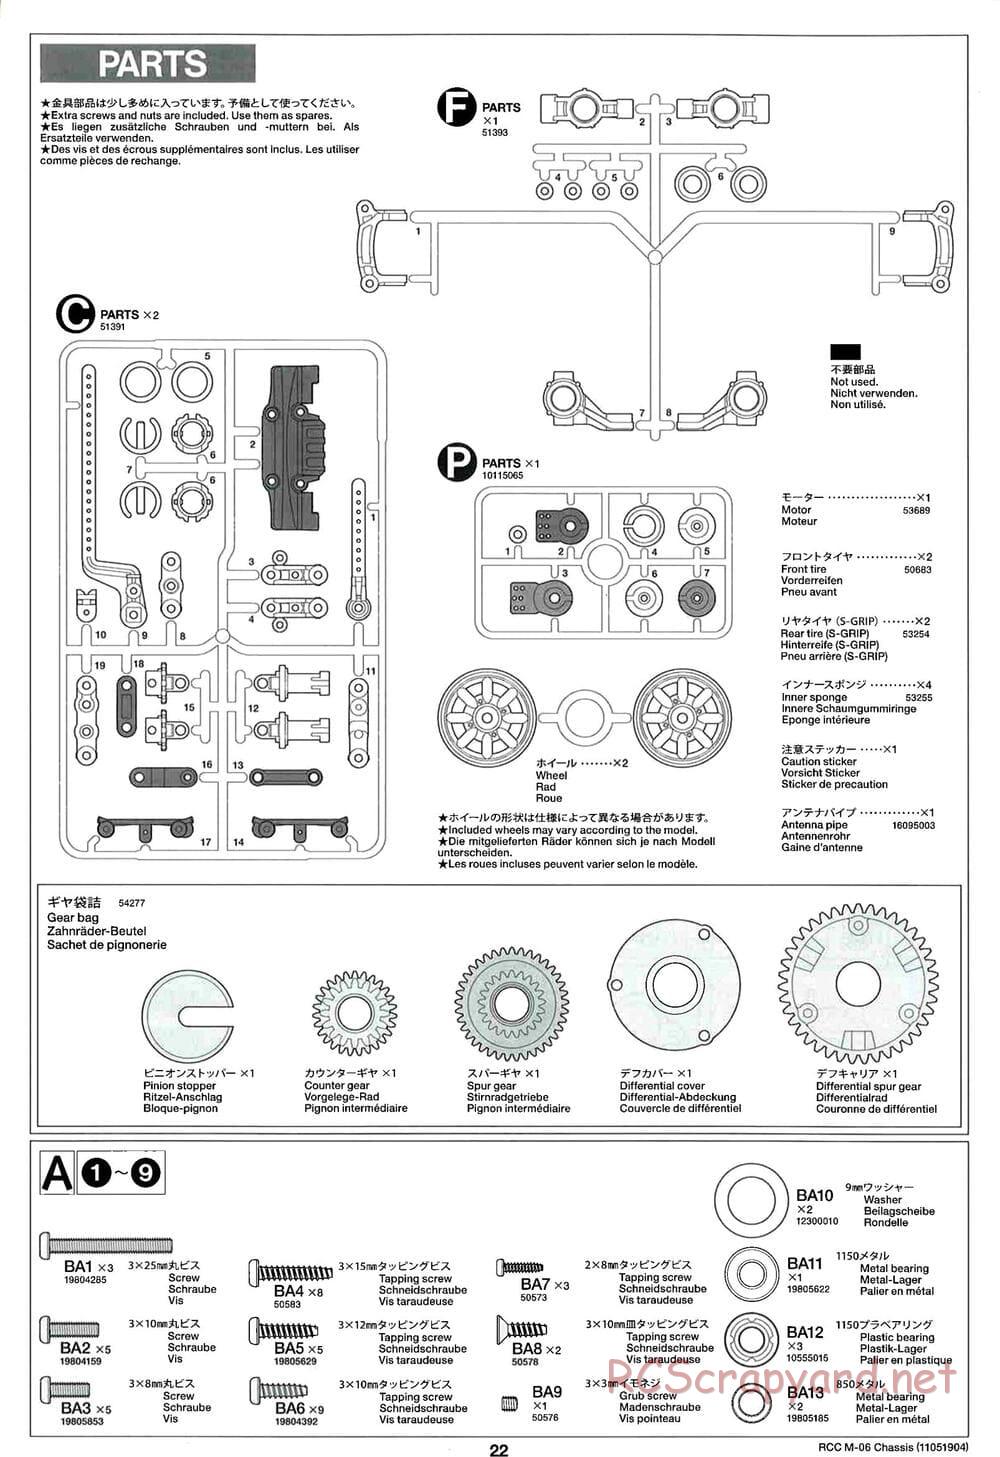 Tamiya - M-06 Chassis - Manual - Page 22